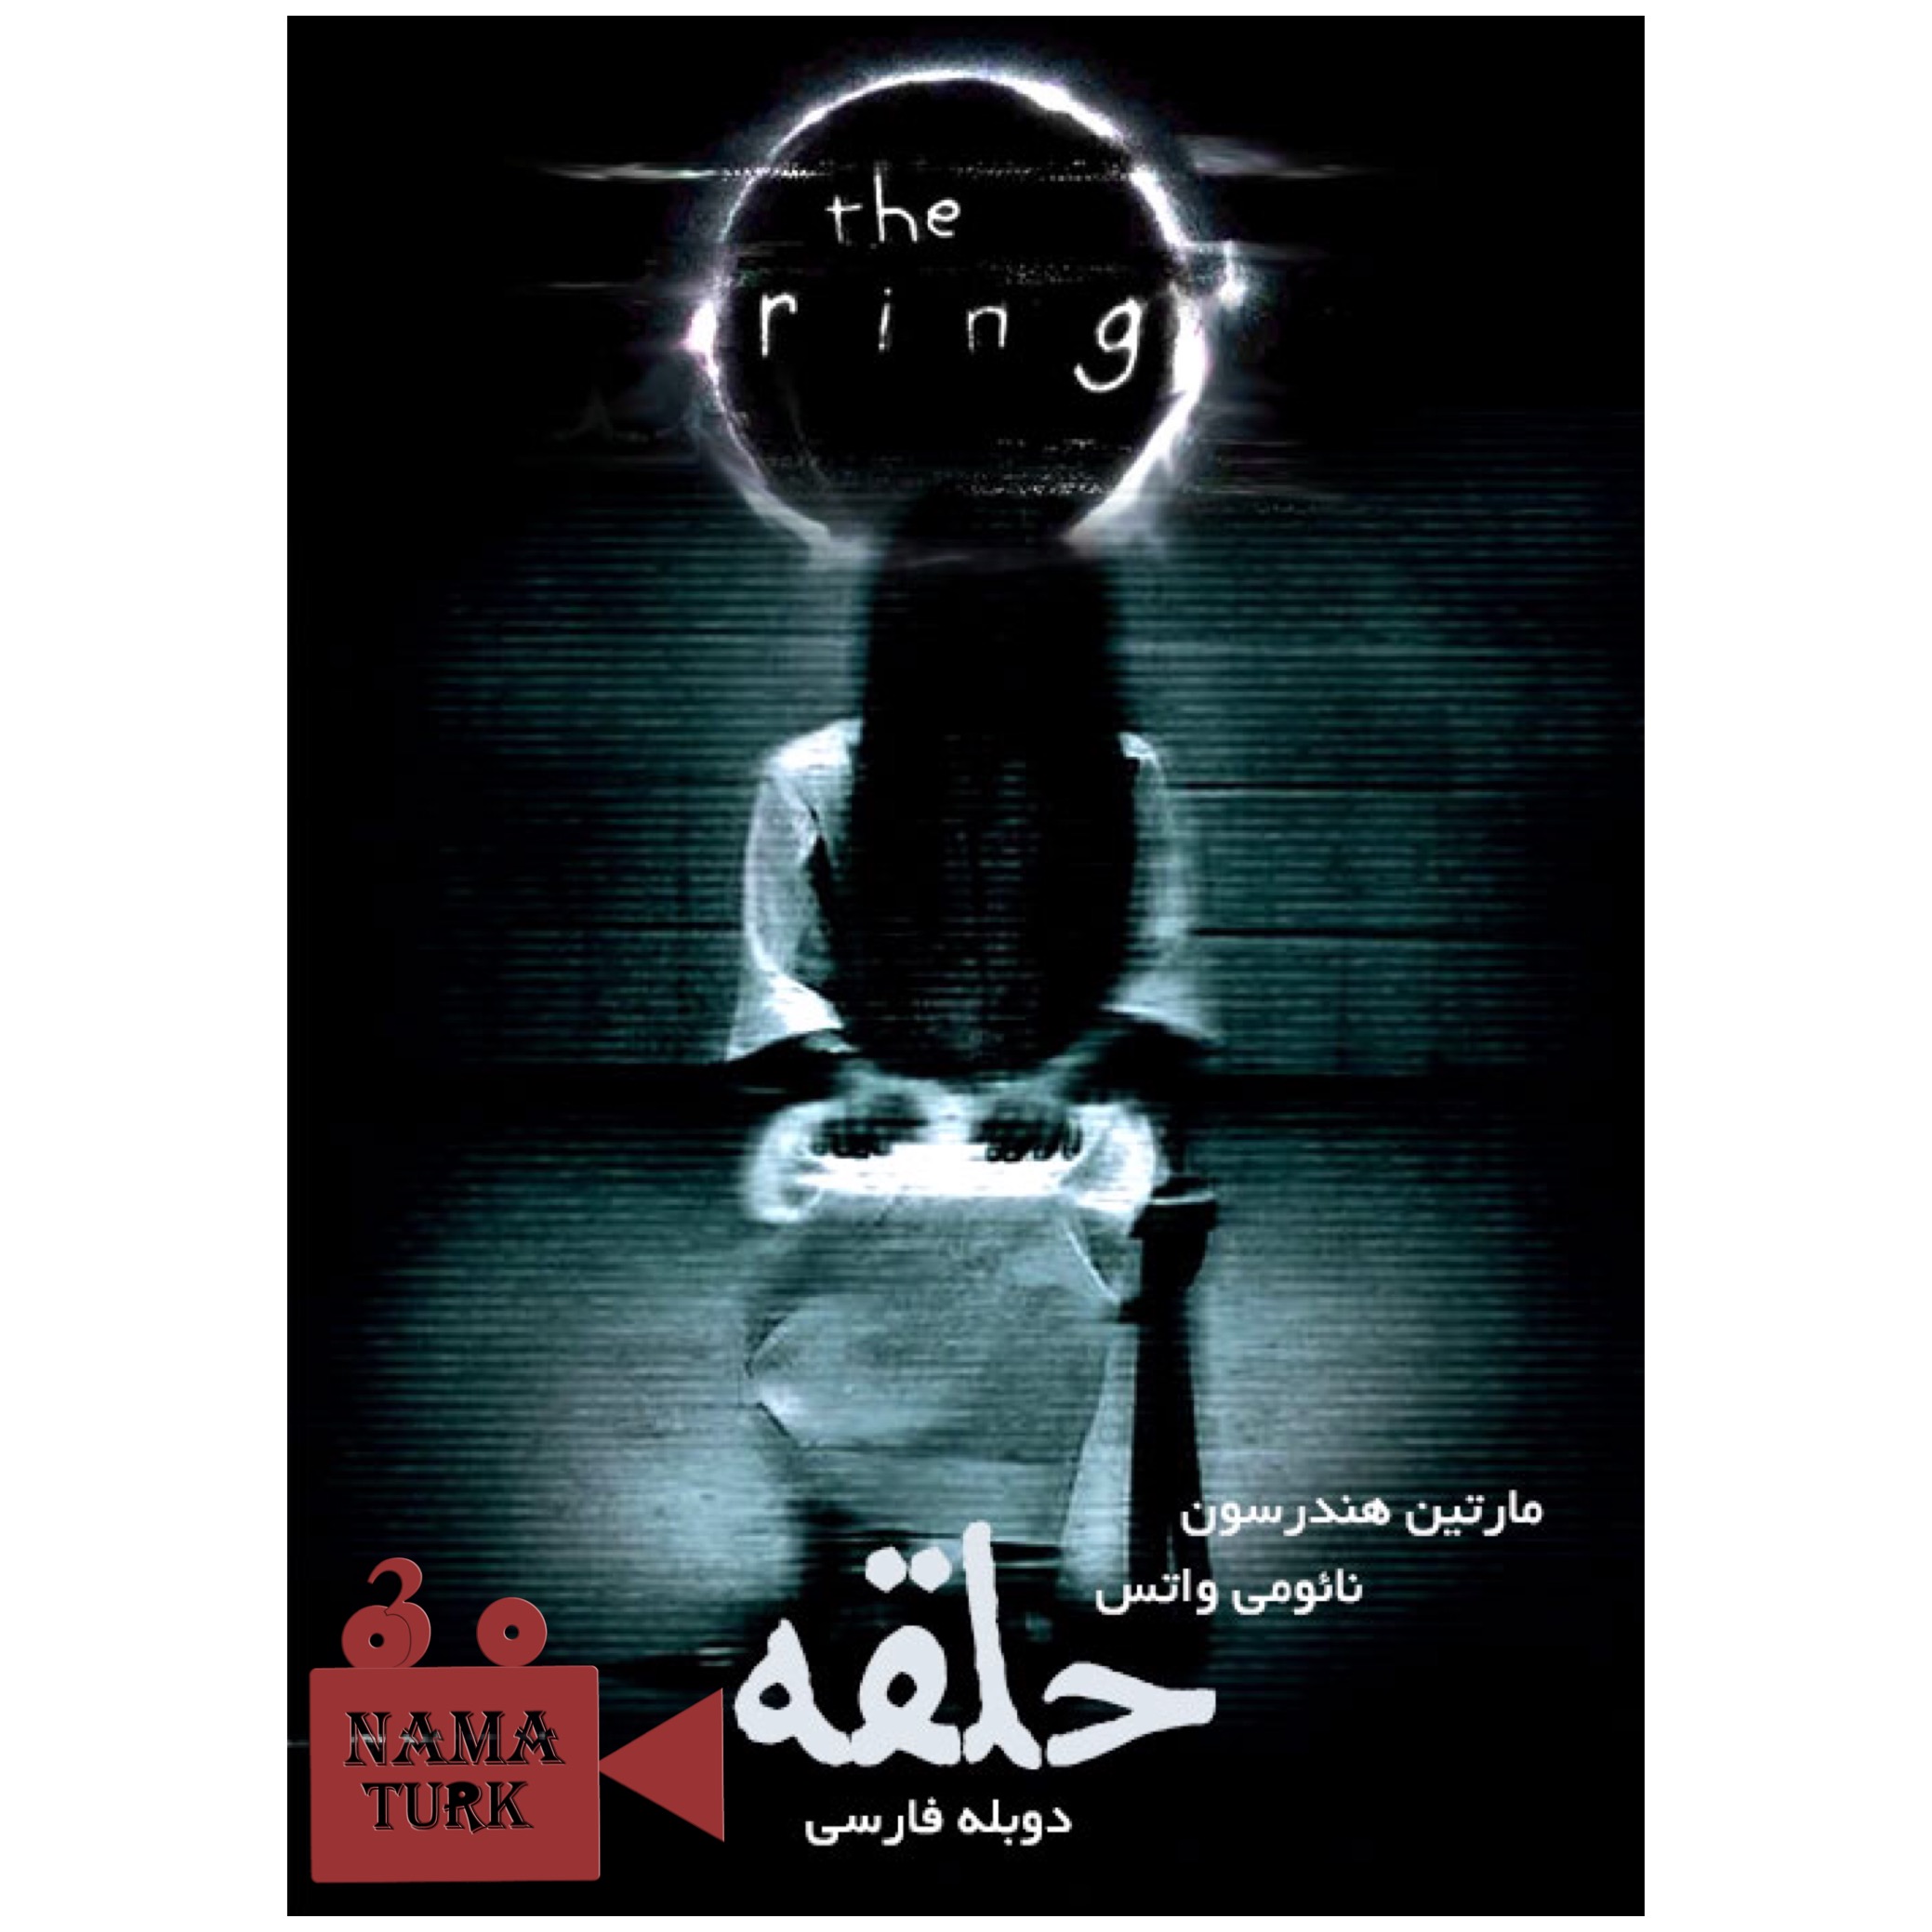 دانلود فیلم حلقه The Ring 2002 با دوبله فارسی و کیفیت عالی